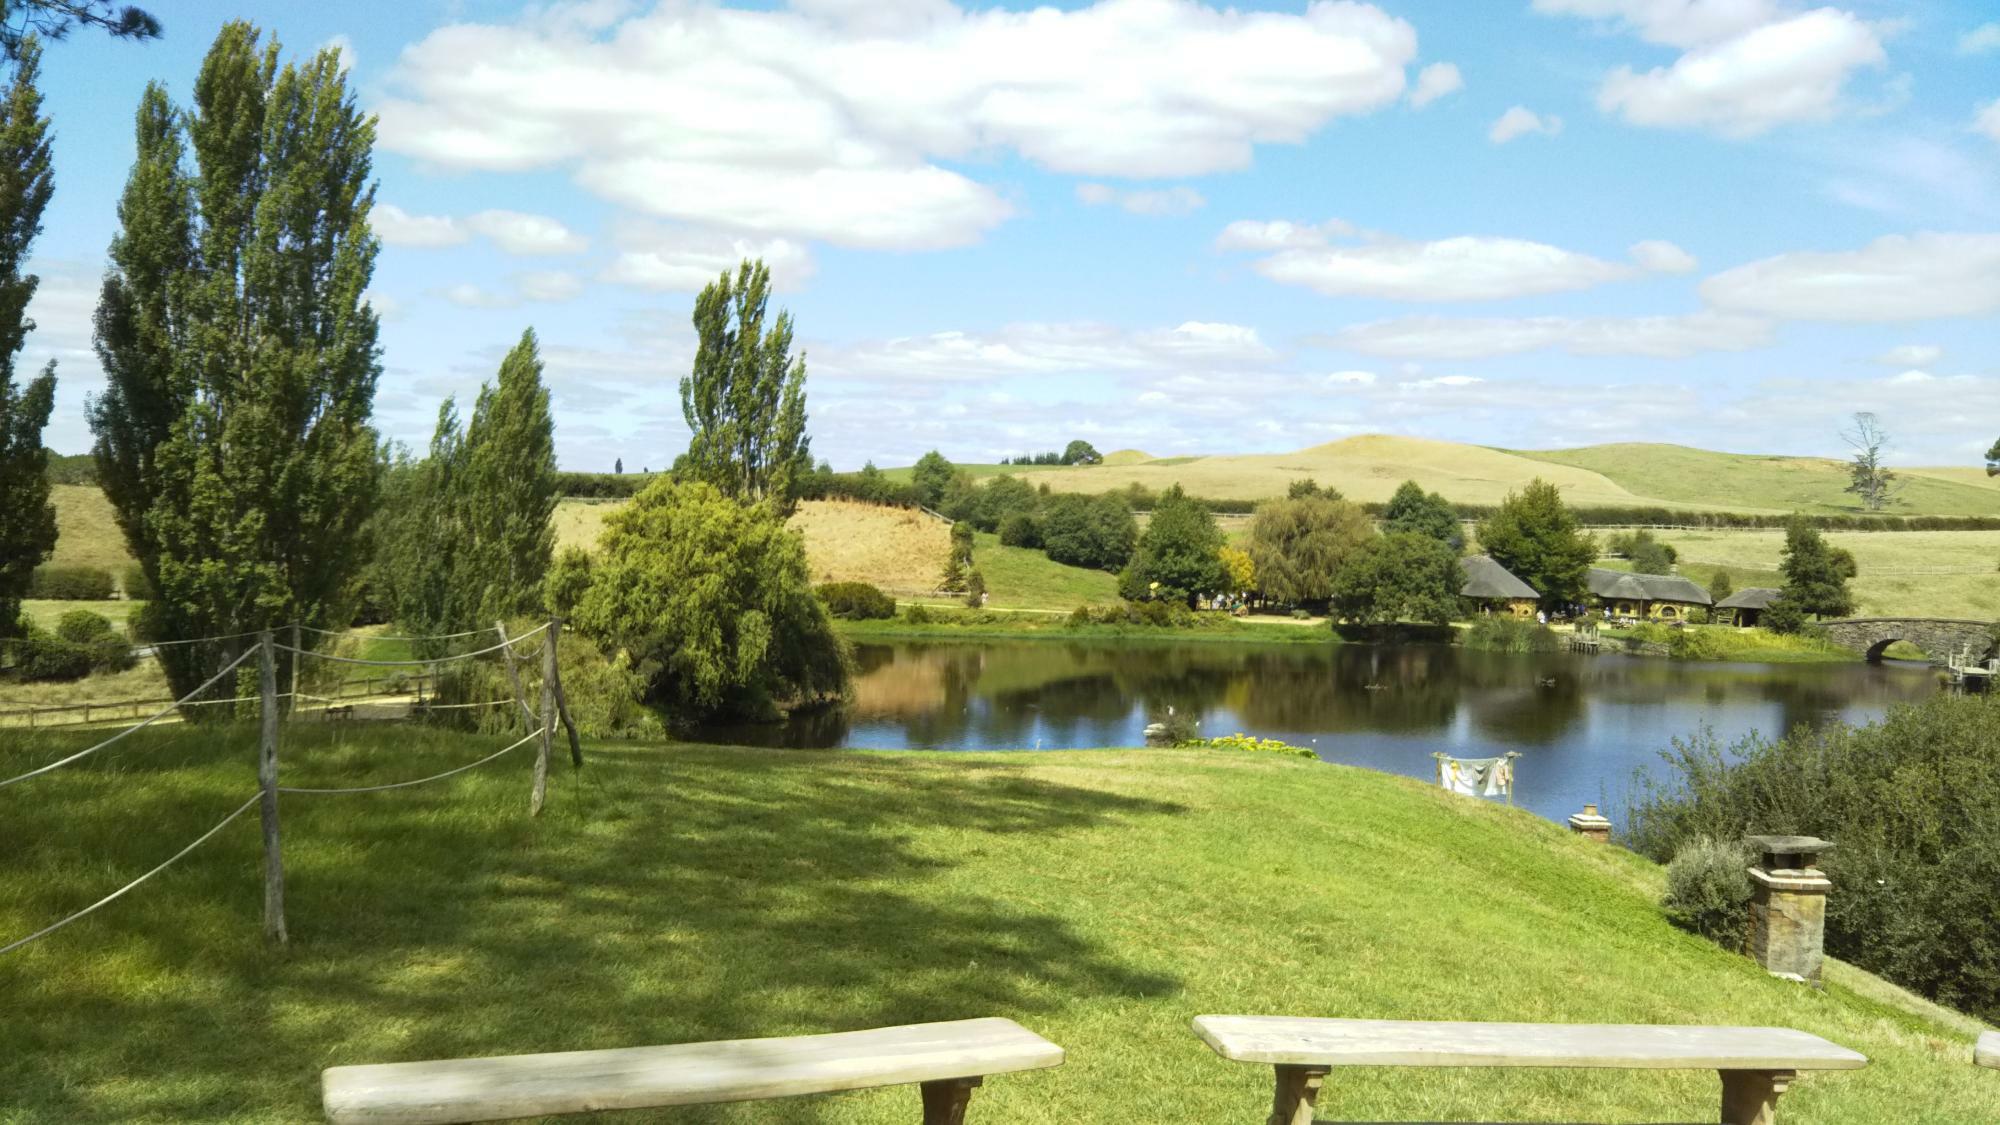 テーマパークはディズニーランドだけではない。ニュージーランドにある映画「ホビット」シリーズの撮影が行なわれた「ホビット村」は、テーマパークであり広大な牧場としての一面も持つ（2020年筆者撮影）。